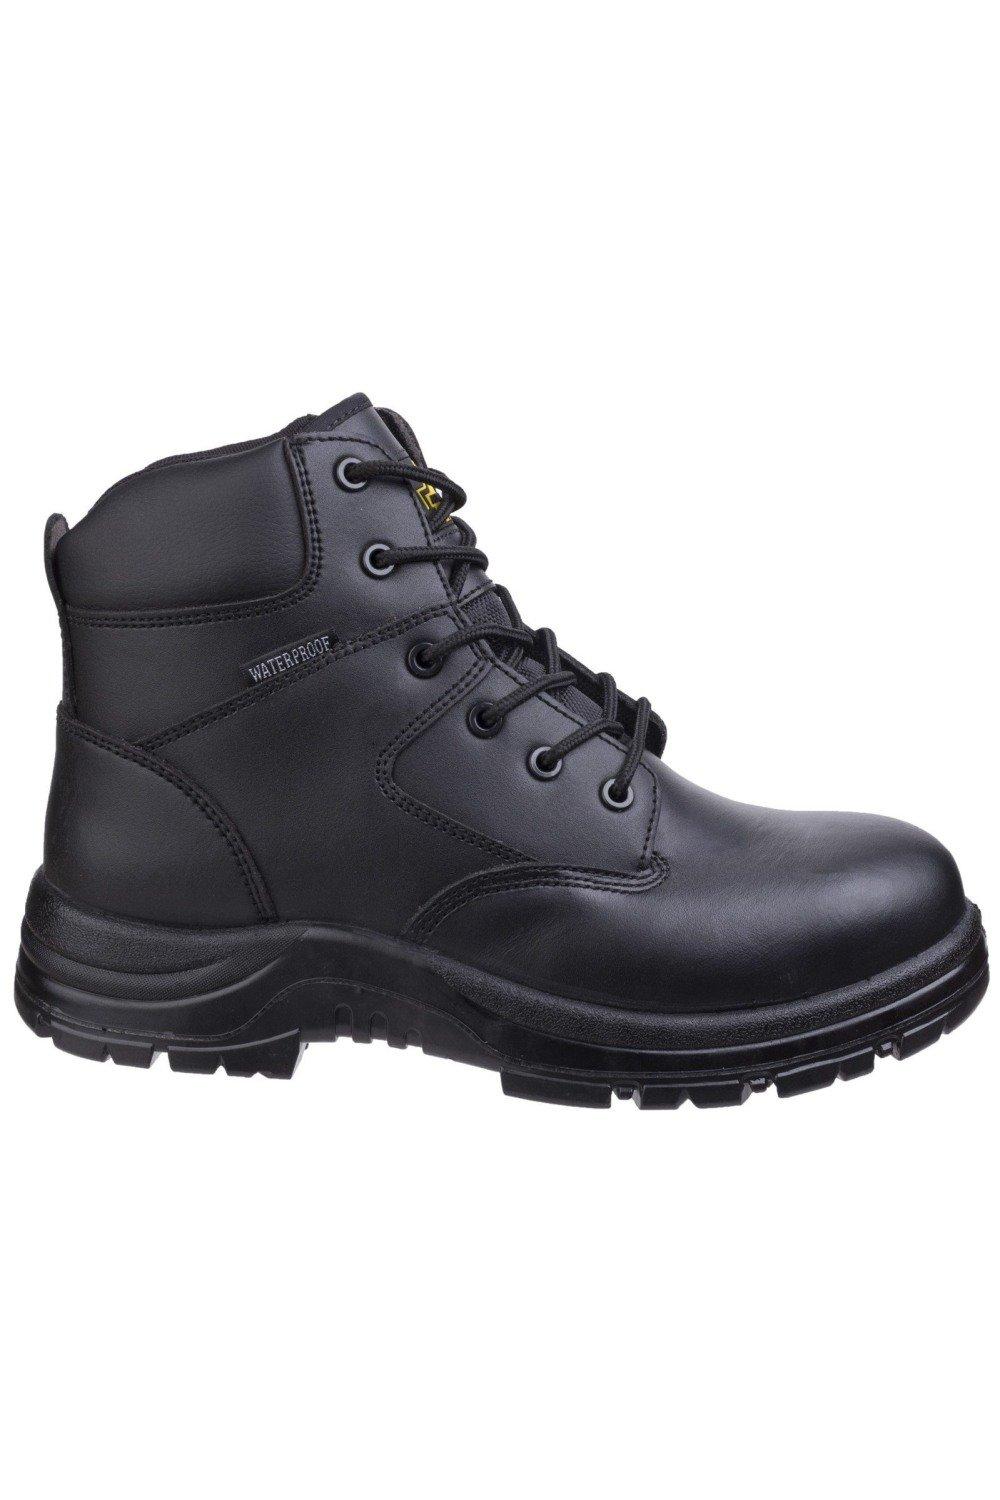 Защитные ботинки FS006C Amblers, черный фото